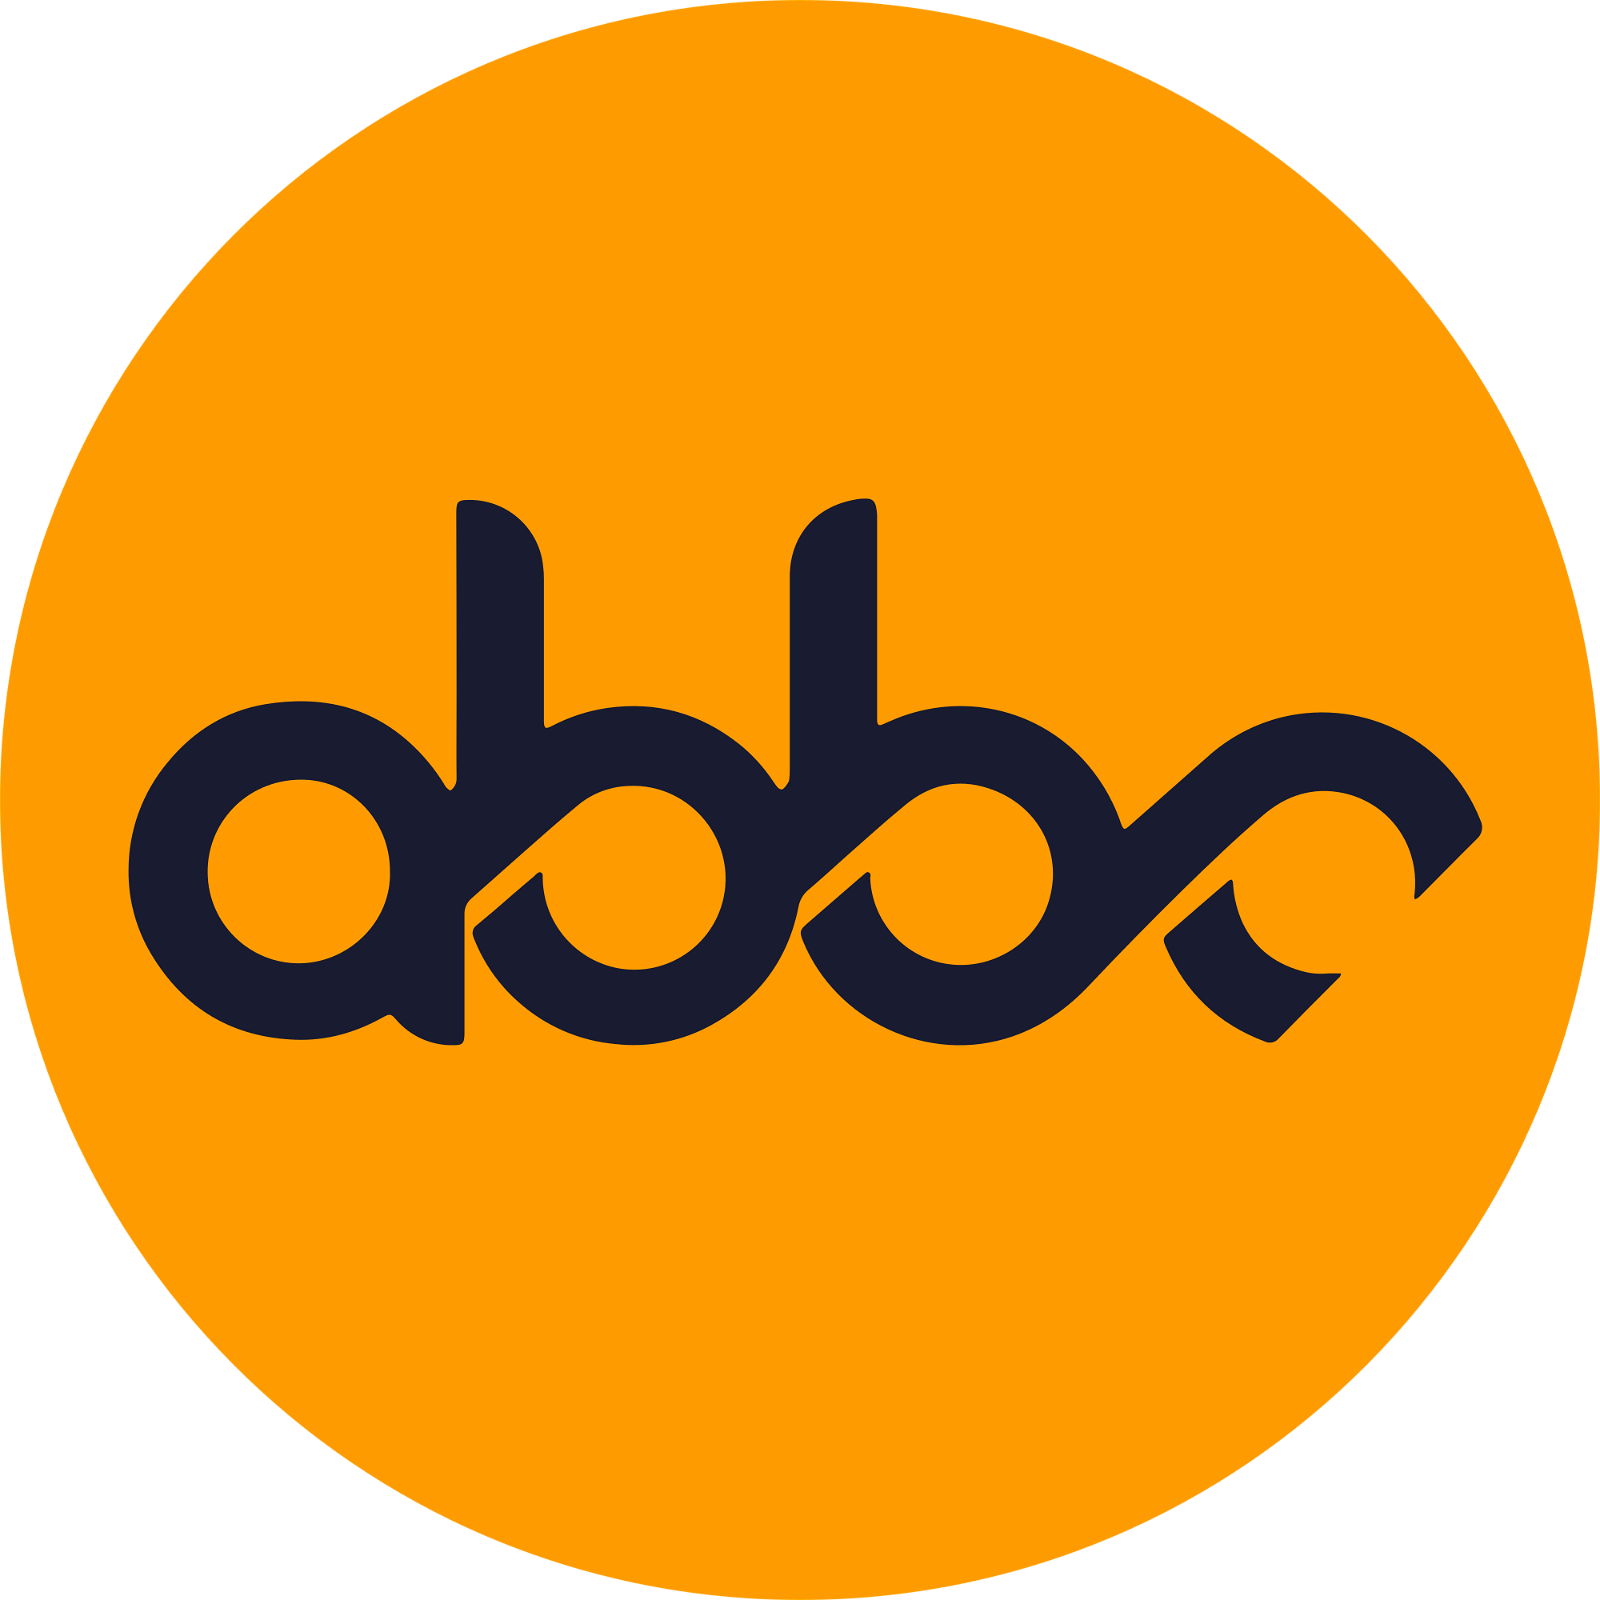 ABBC Coin Logo